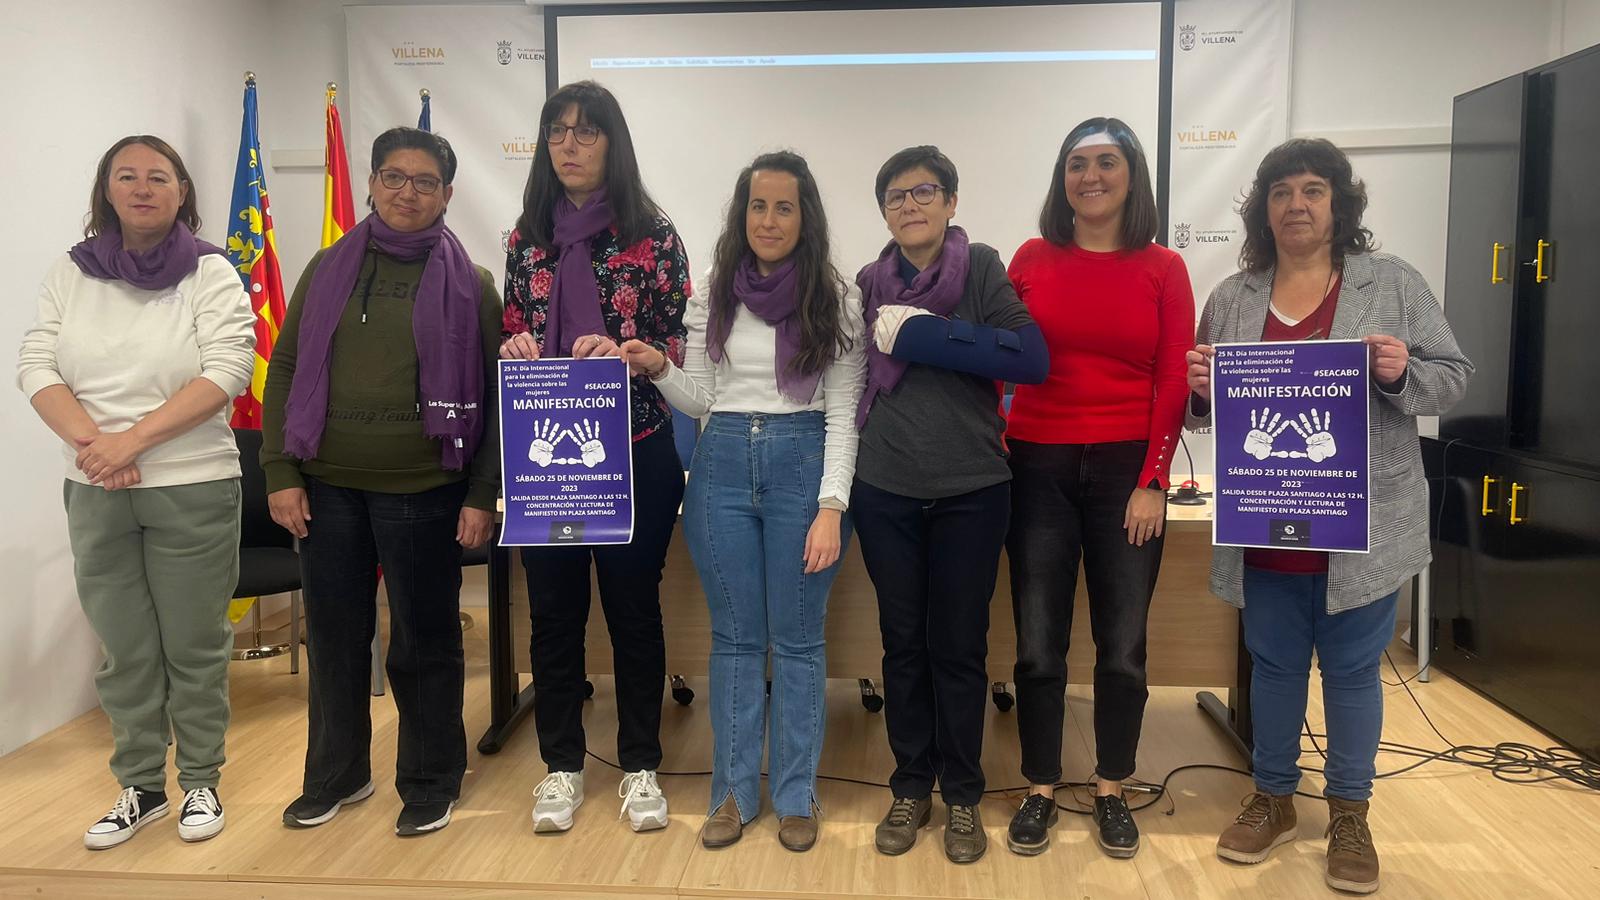 Villena organiza una manifestación contra la violencia machista el 25N